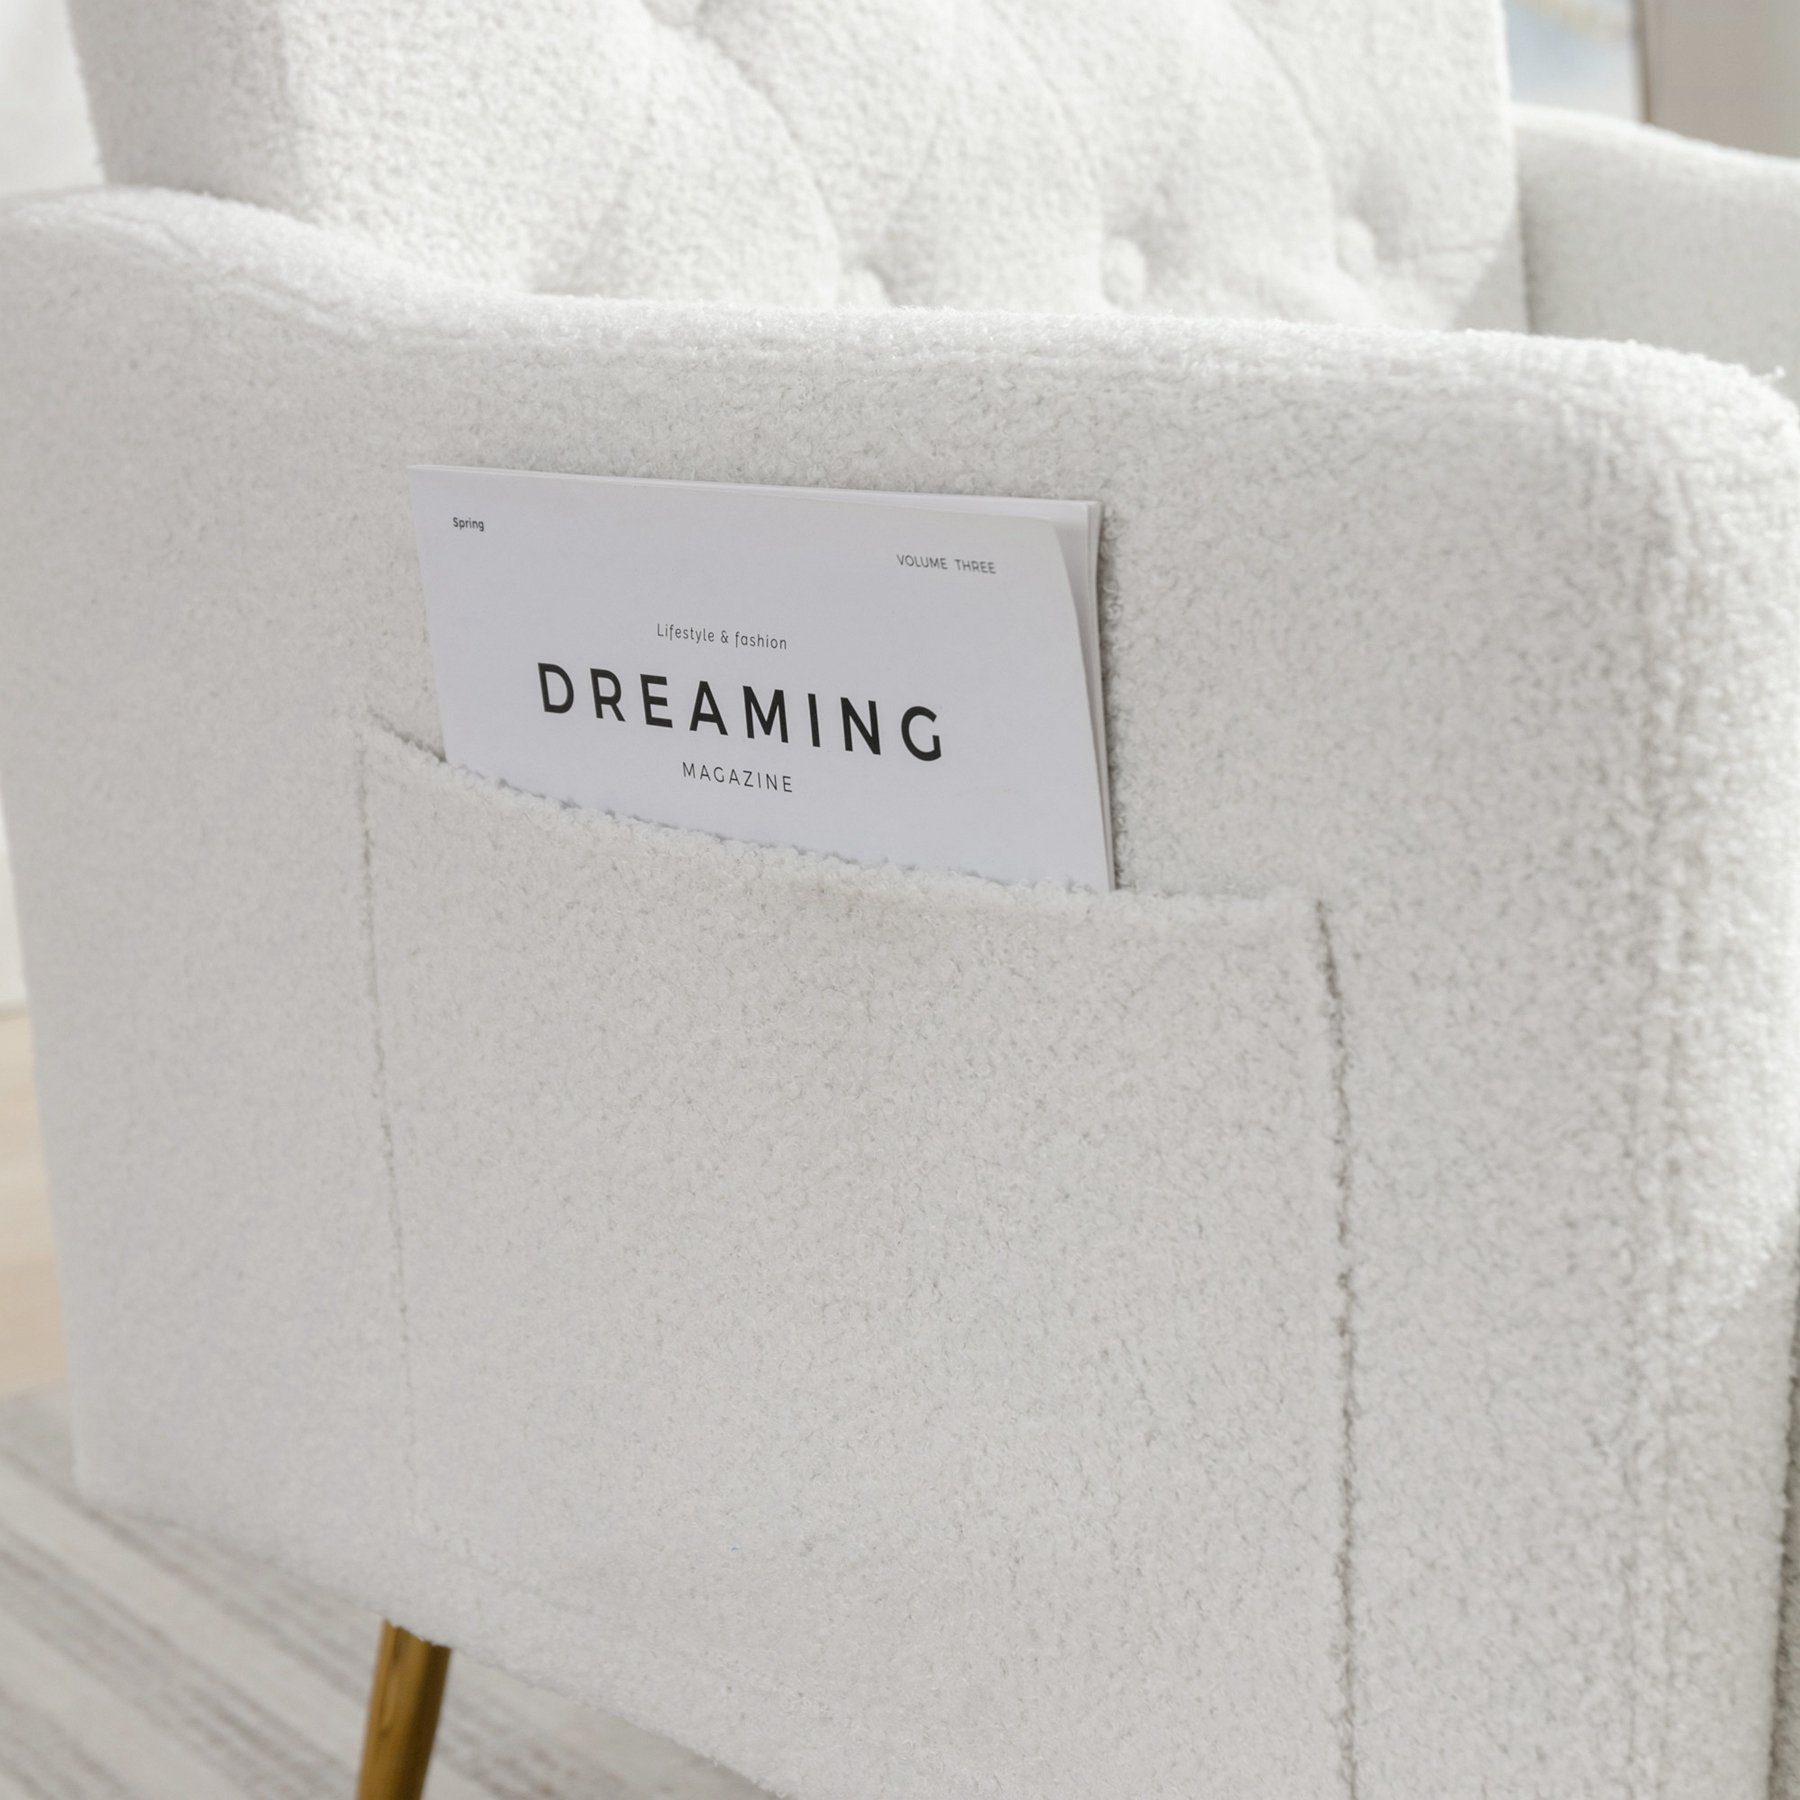 Celya Seitentaschen,gepolsterter Sofastuhl,lässiger Weiß Relaxsessel Sessel mit Sessel